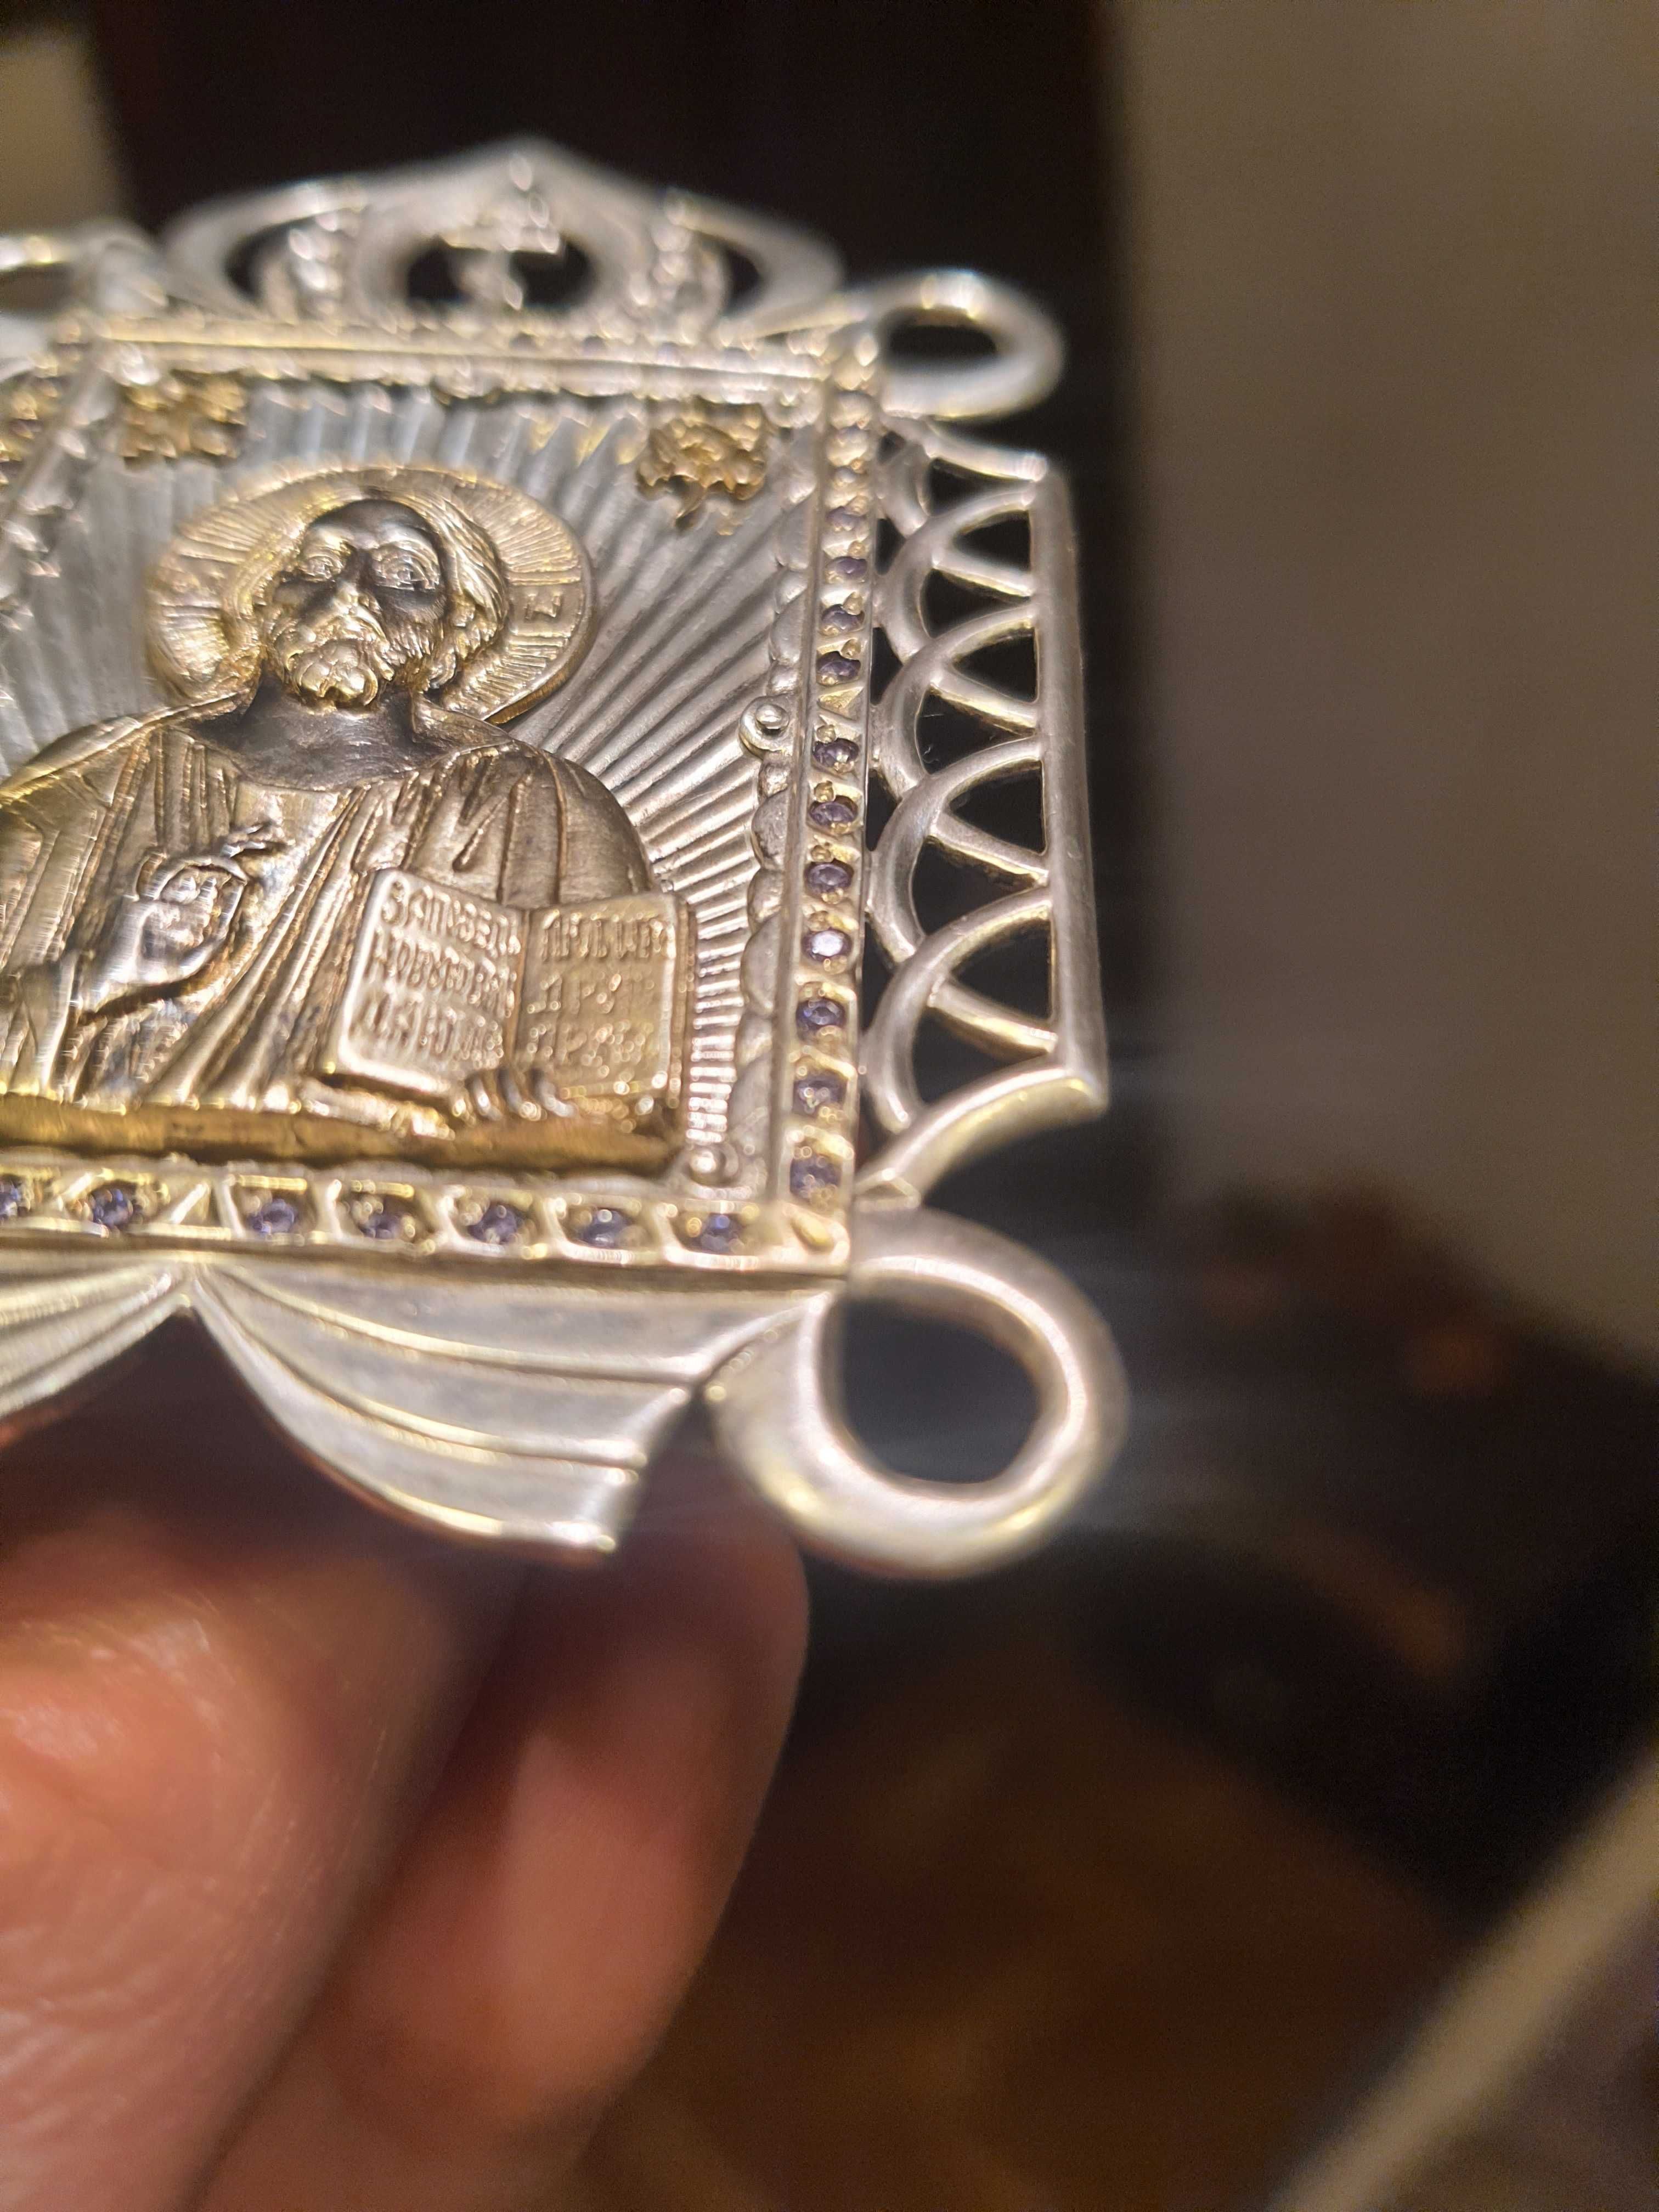 Ікона Христа срібна позолотою фіонітами Агат Луганська обл до окупації